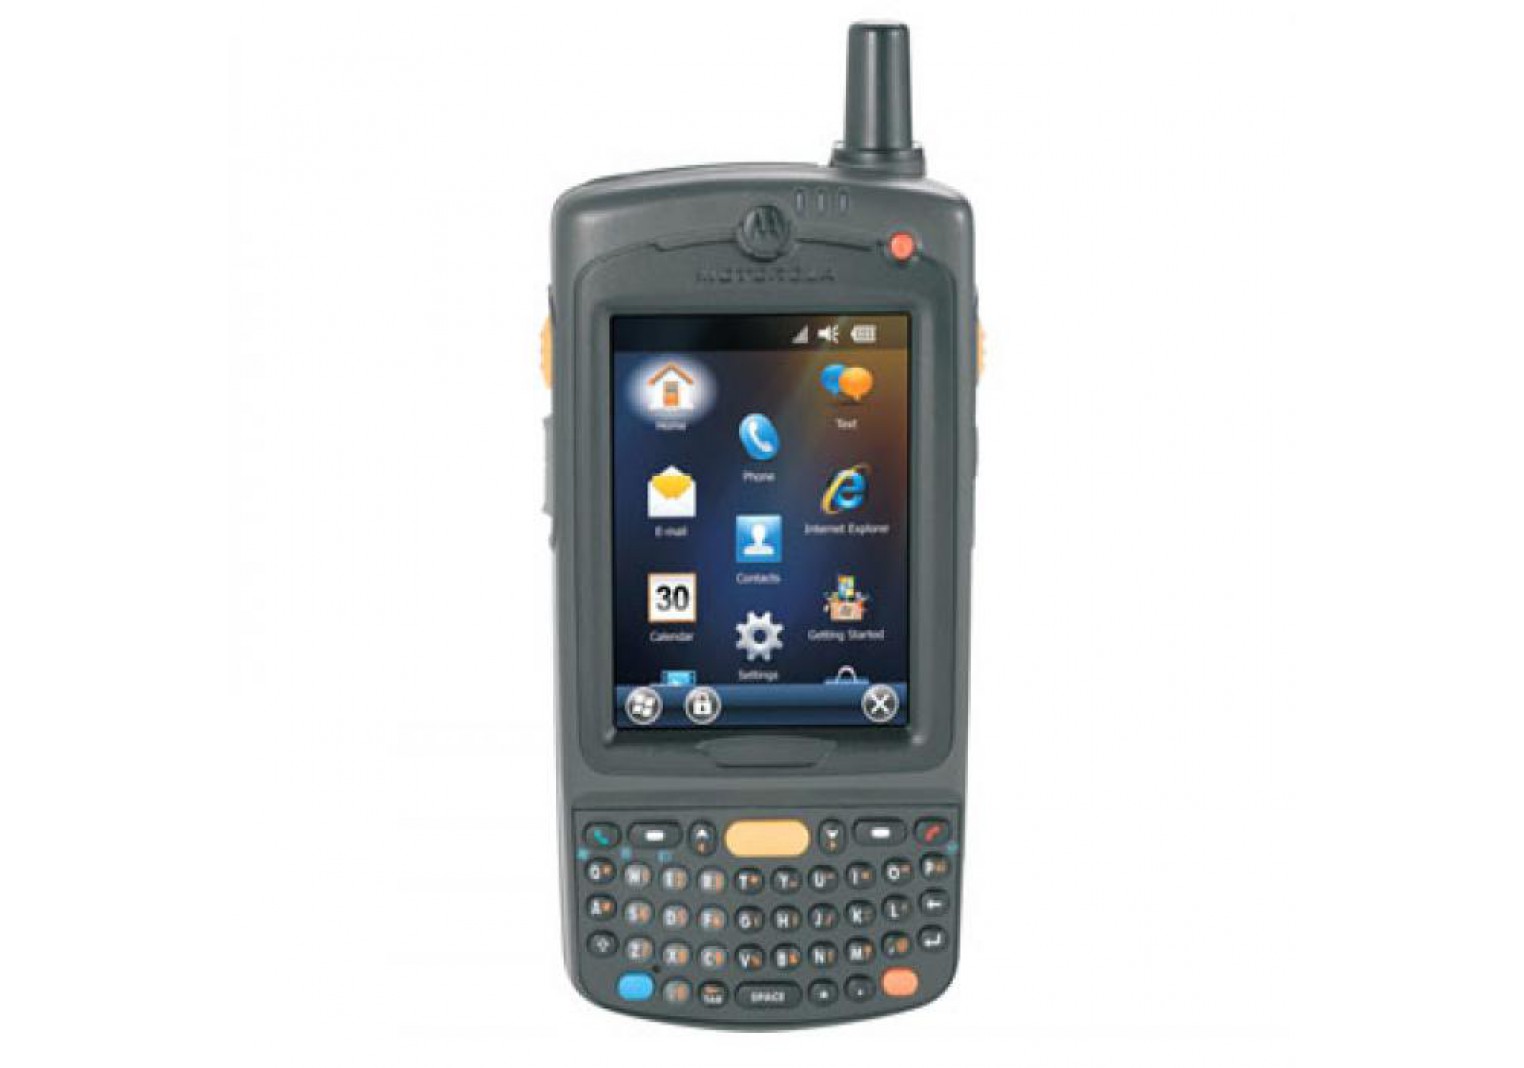 เครื่องอ่านบาร์โค้ดมือถือ Motorola MC75 Handheld Barcode Scanner